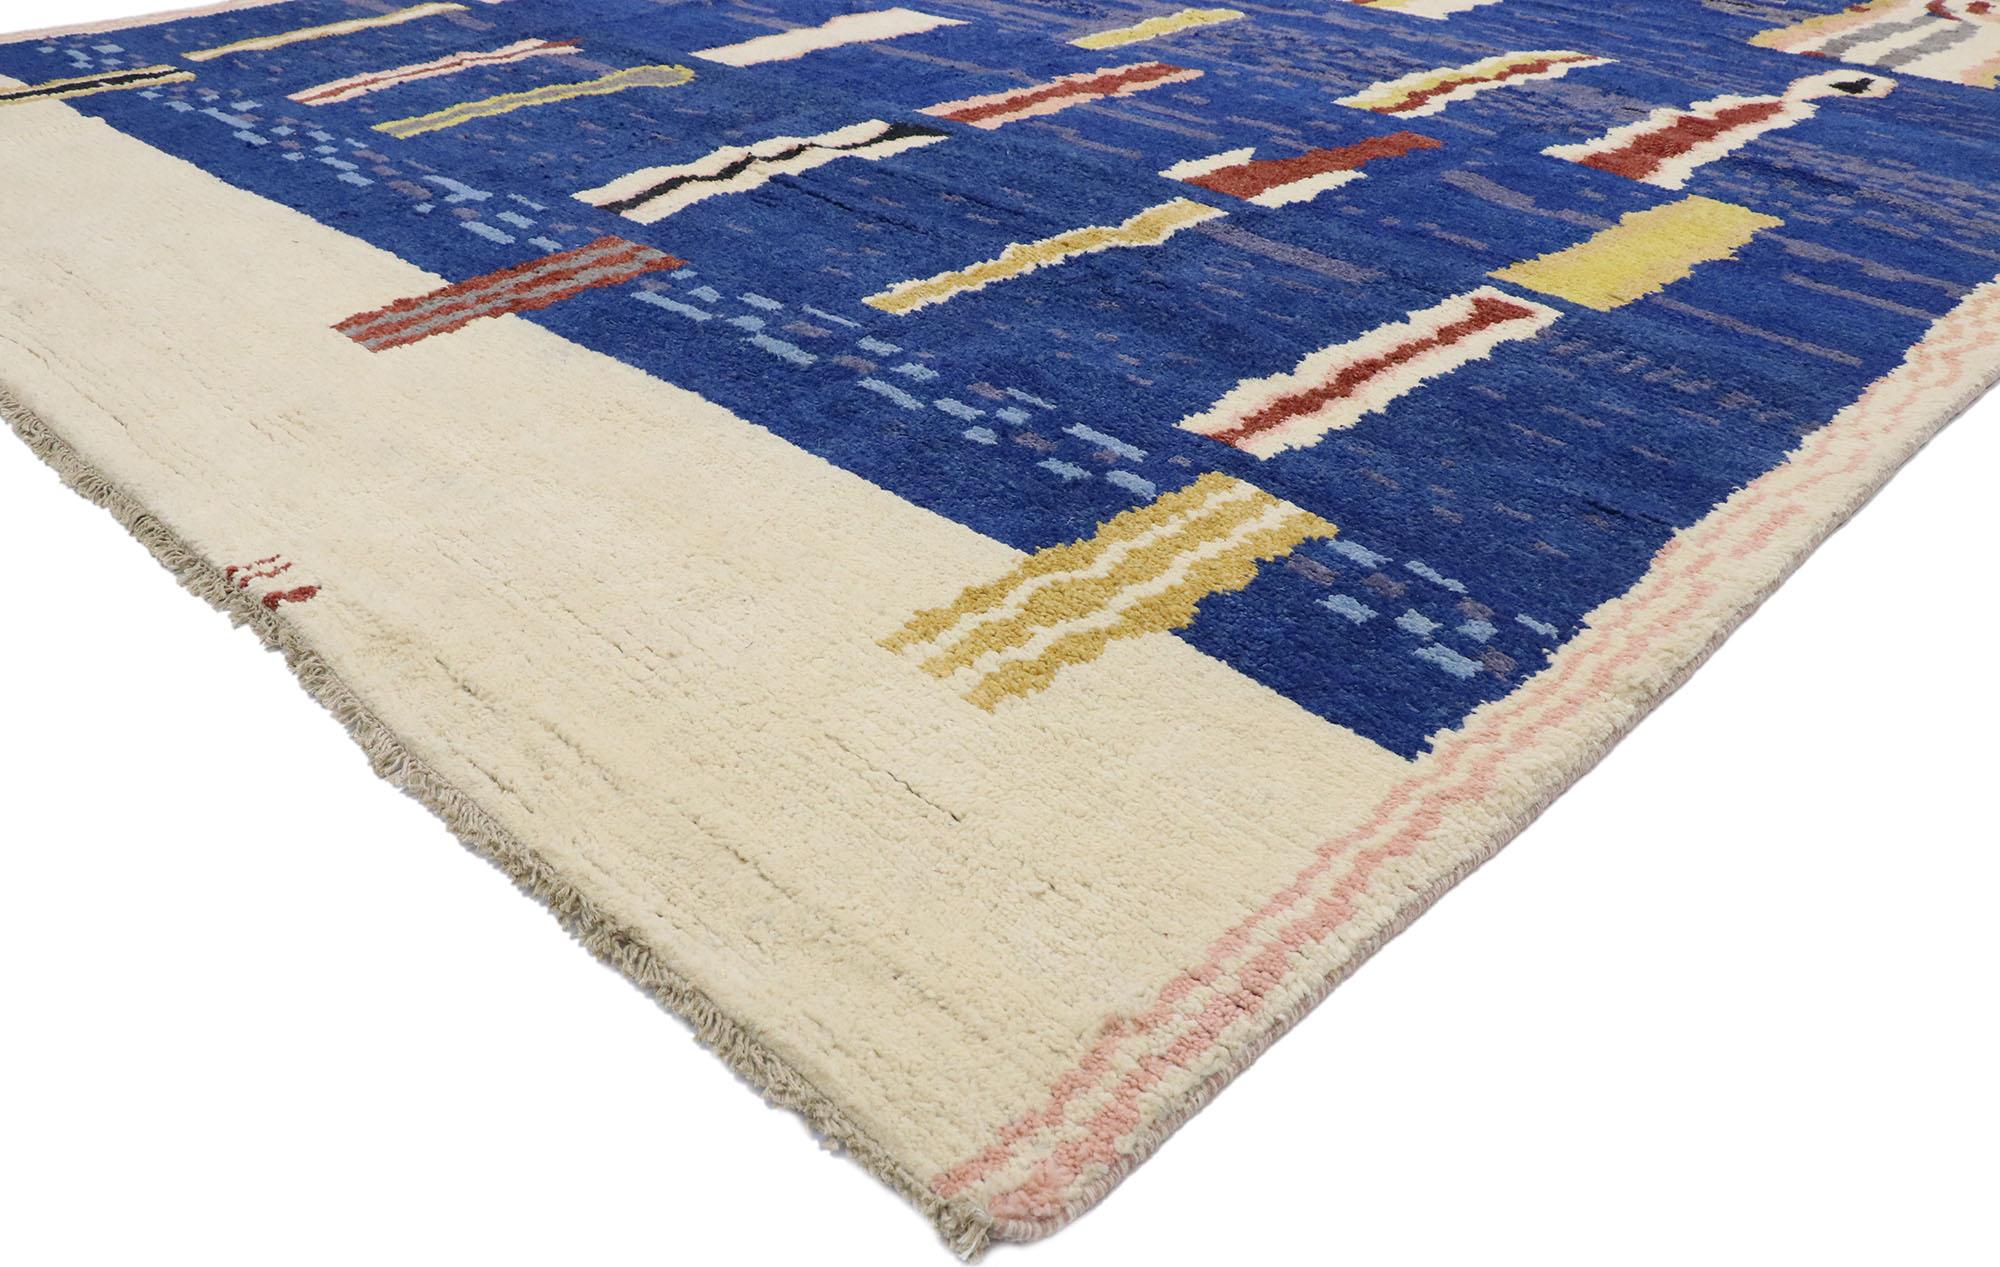 80643 Nouveau tapis marocain contemporain. Avec son design expressif et audacieux, ses détails et sa texture incroyables, ce tapis contemporain de style marocain en laine nouée à la main est une vision captivante de la beauté tissée. Les teintes